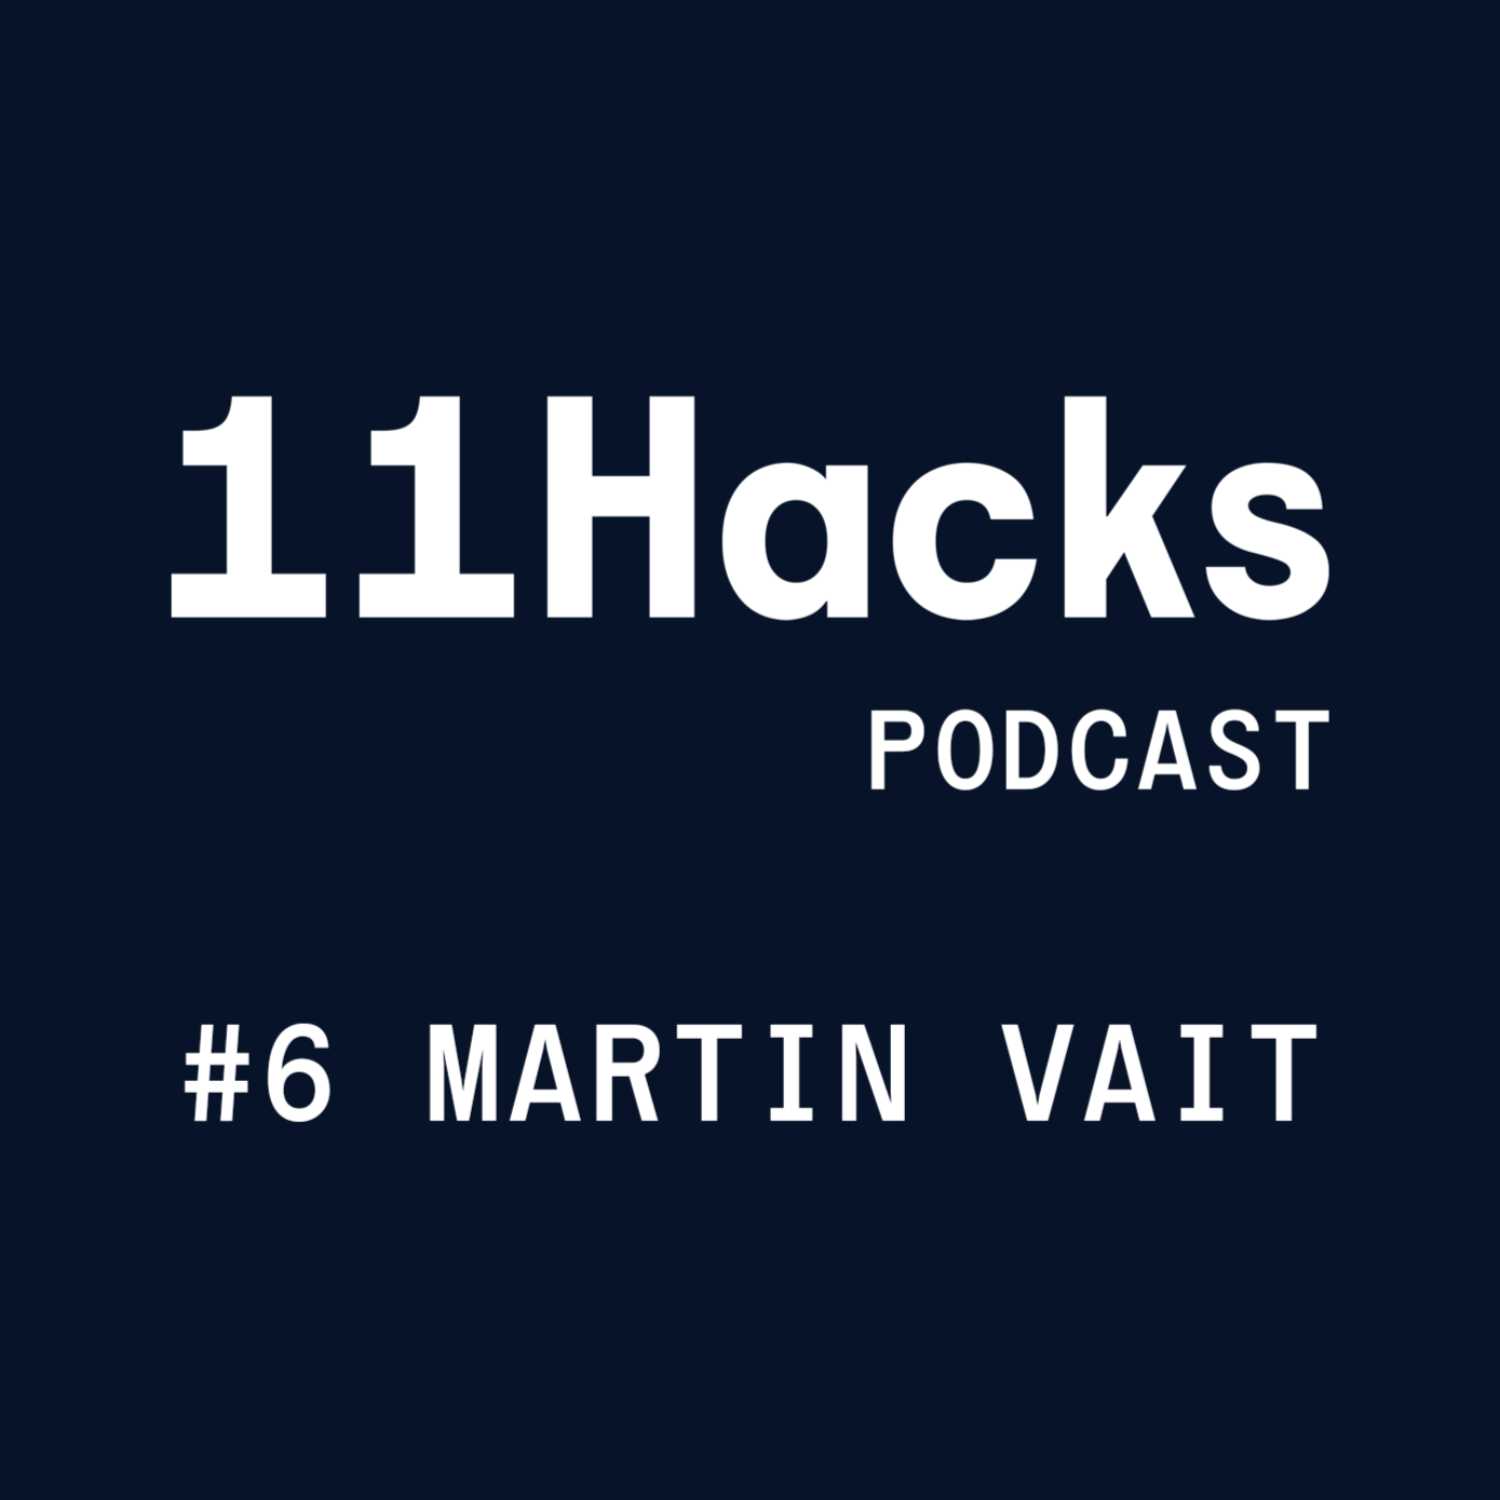 11Hacks Podcast #6 Debata s Martinem Vaitem